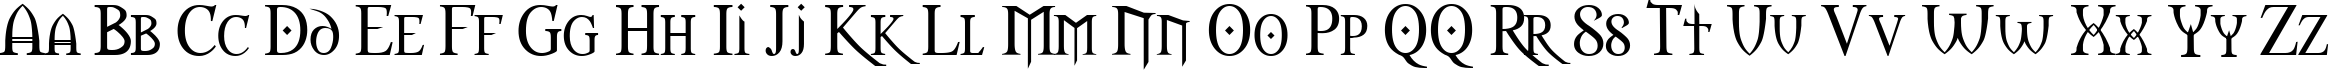 Пример написания английского алфавита шрифтом Morpheus Regular